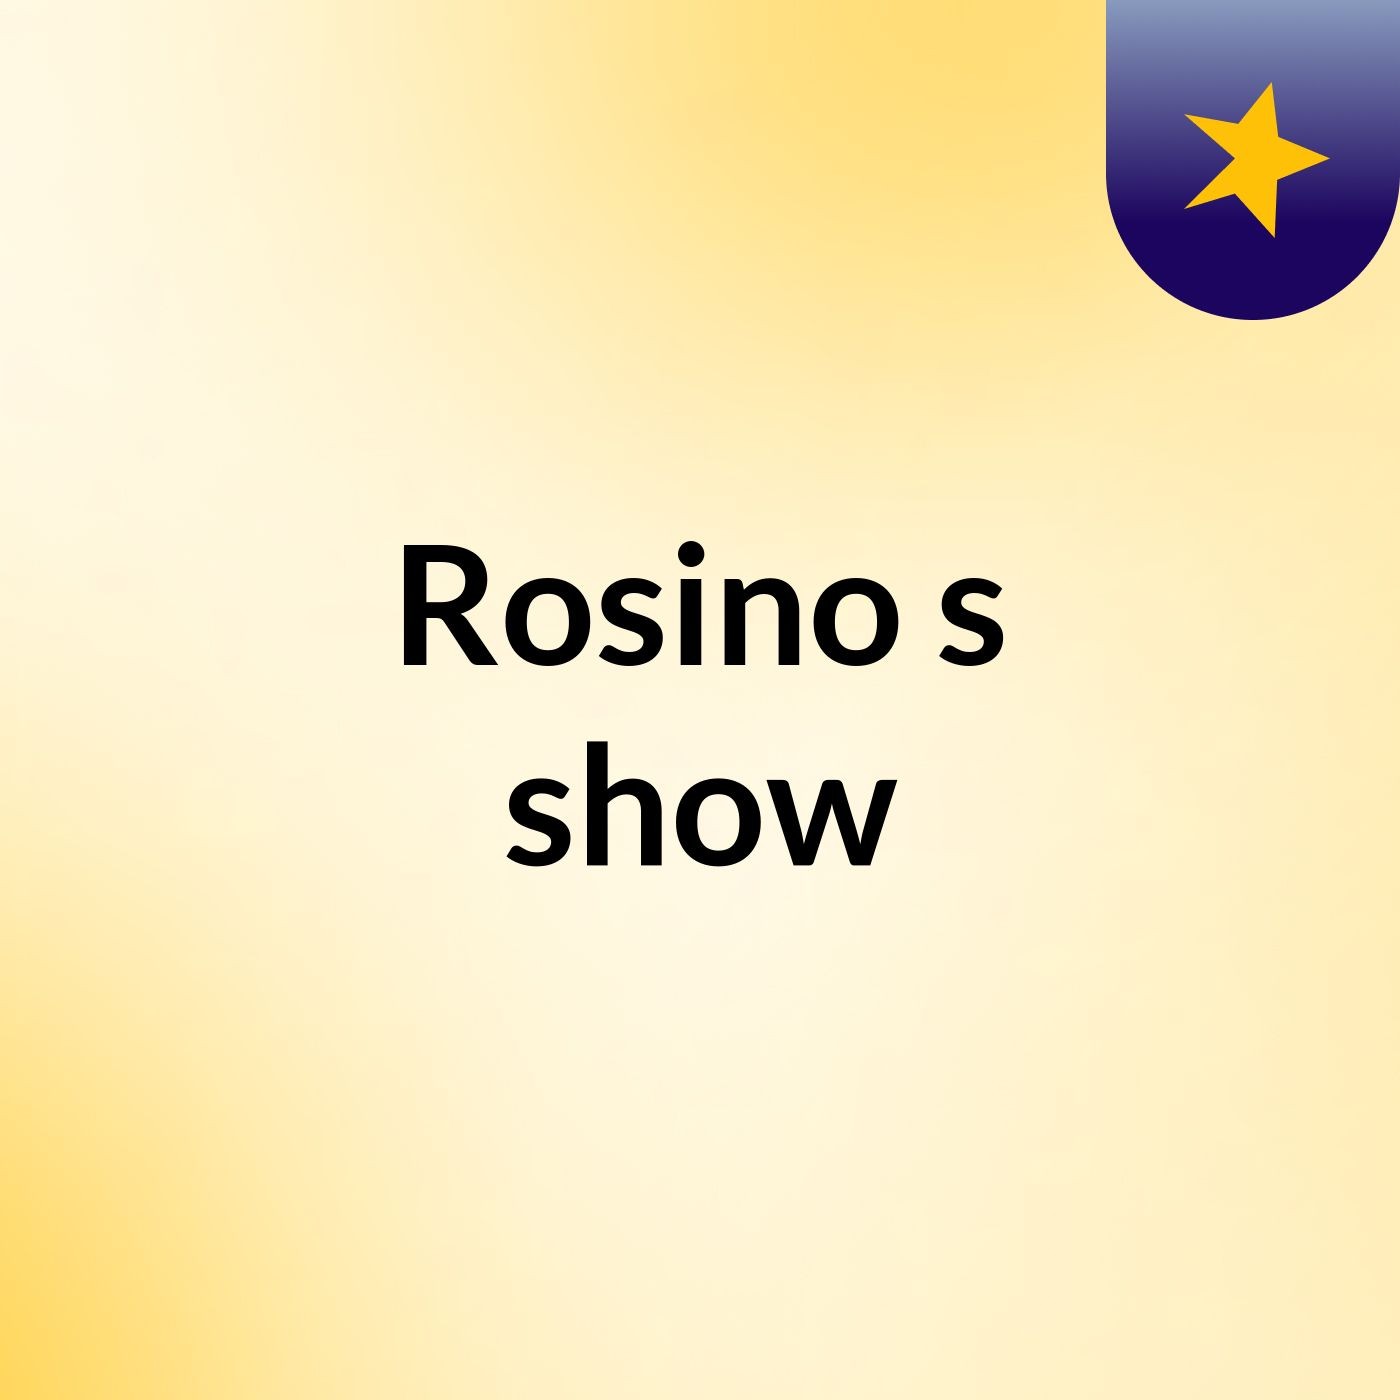 Rosino's show